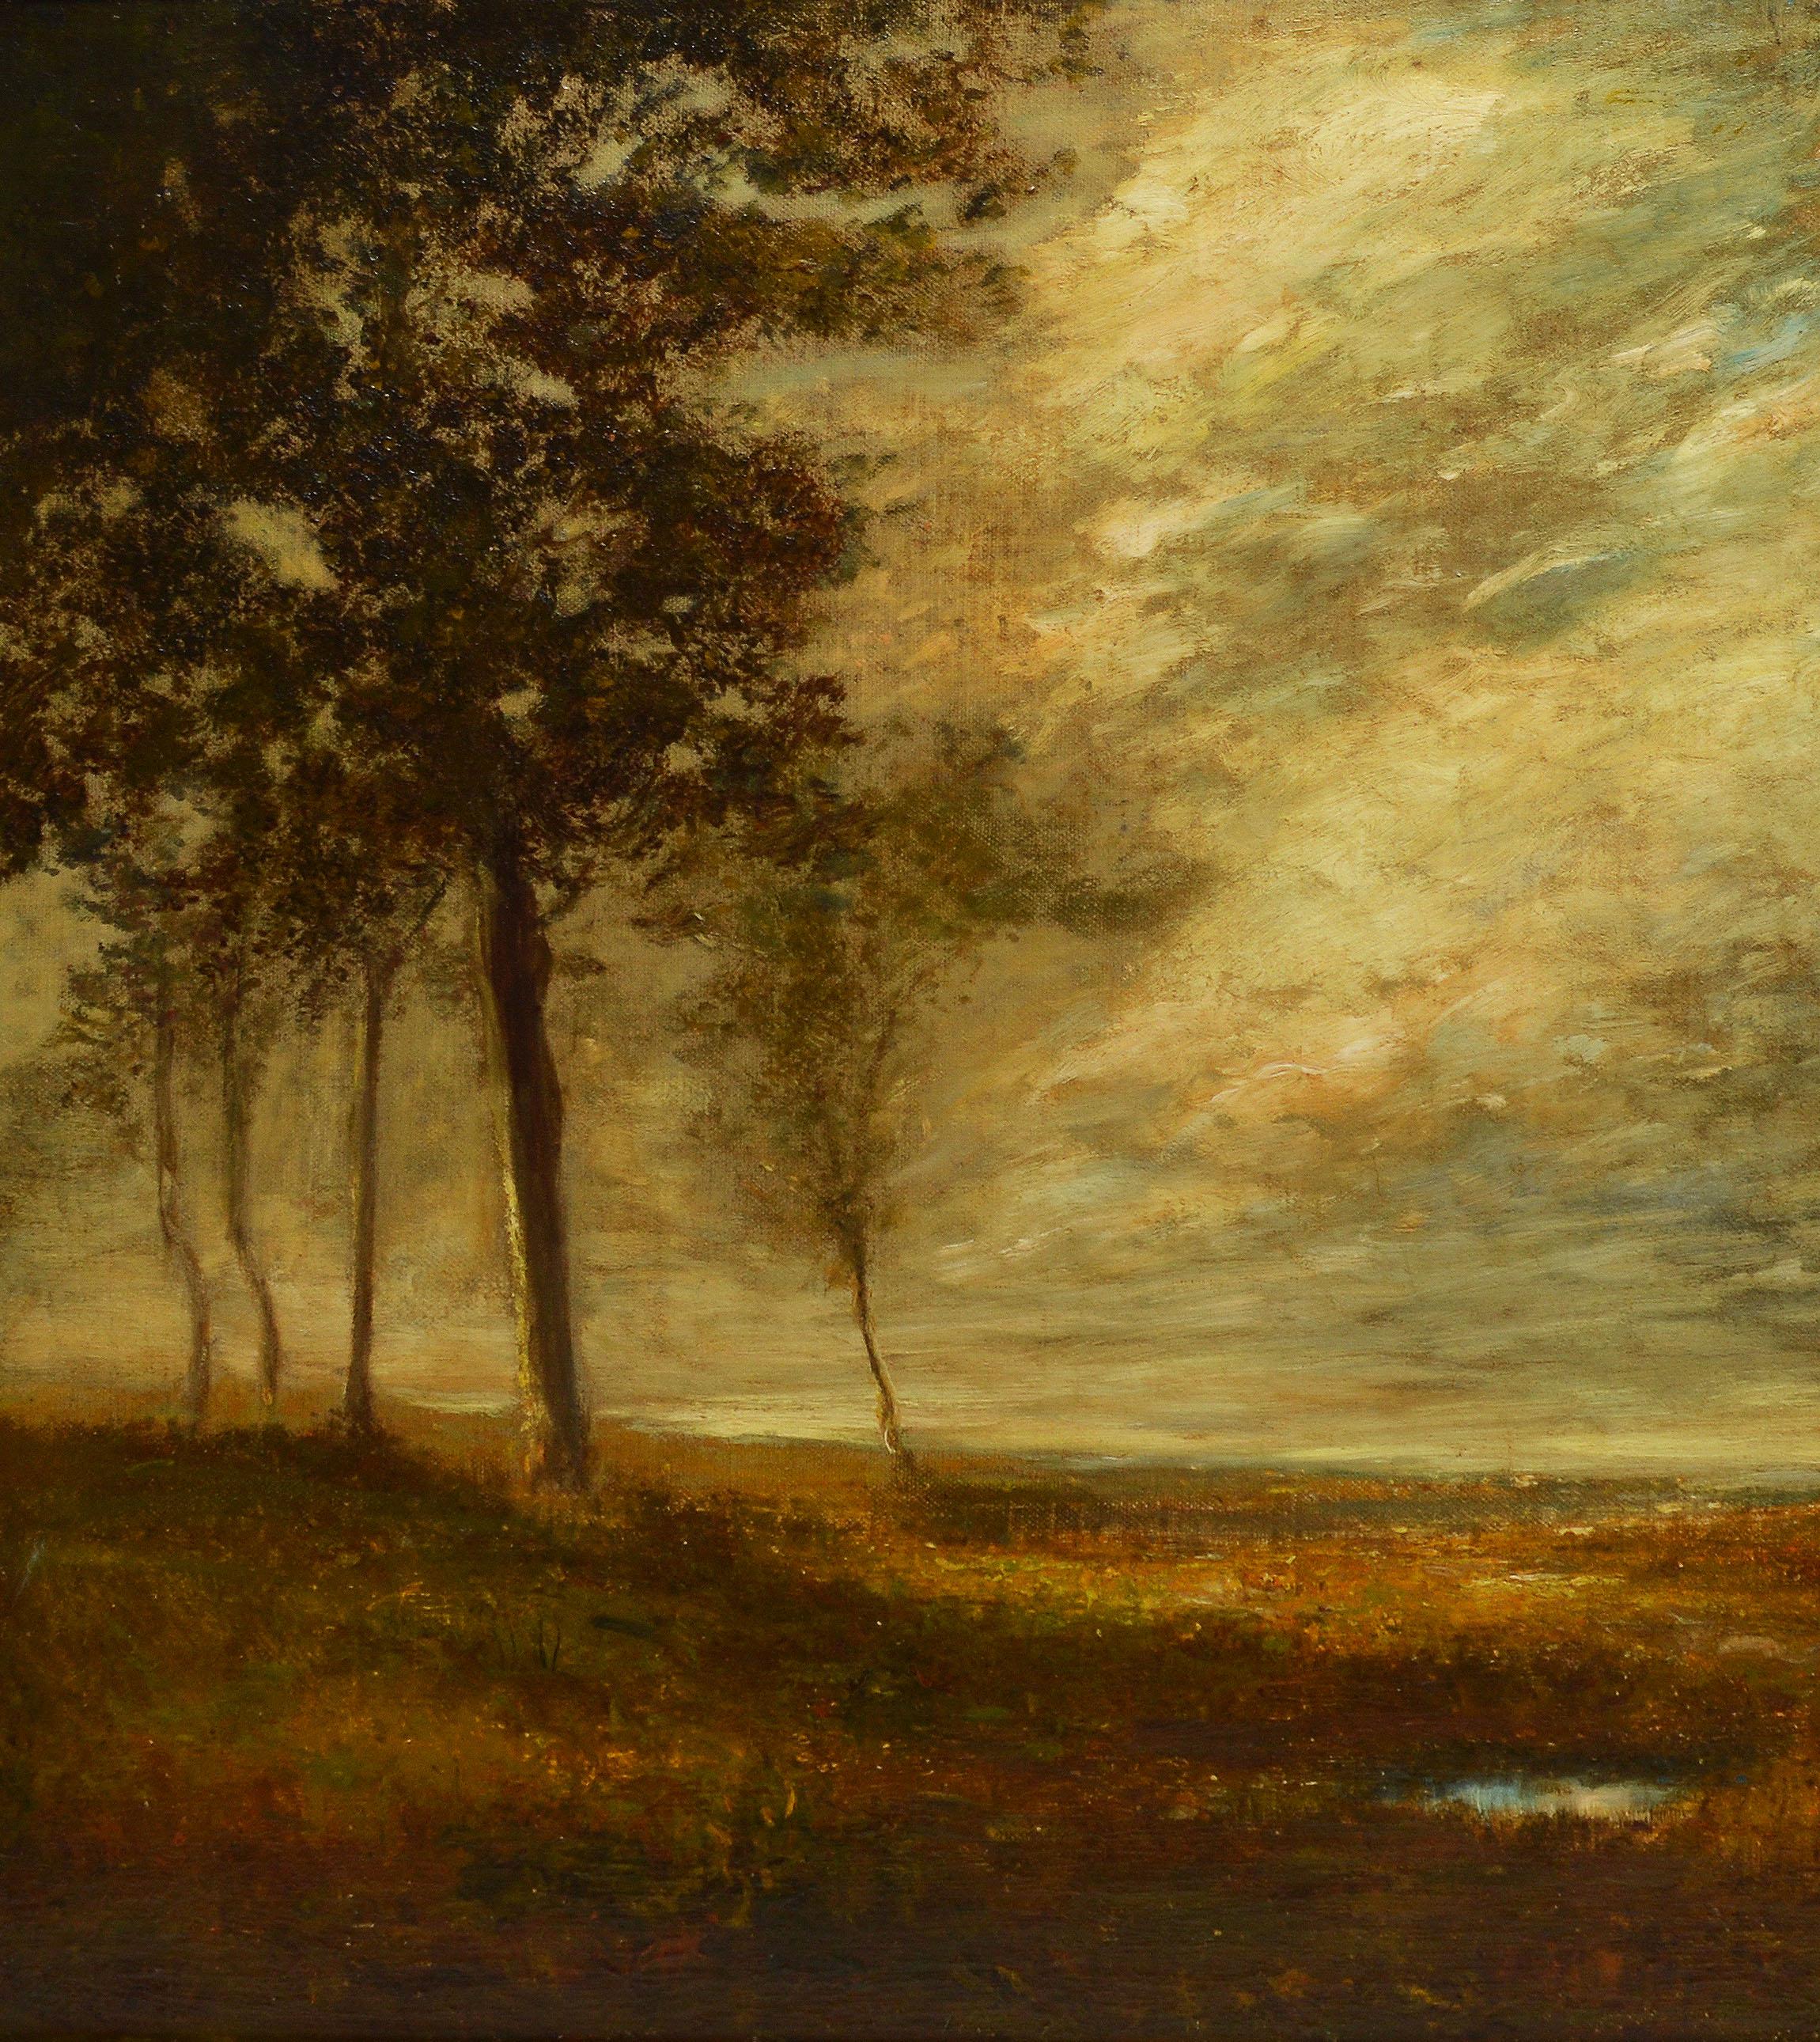 Antique American Tonalist Barbizon Landscape Oil Painting, 